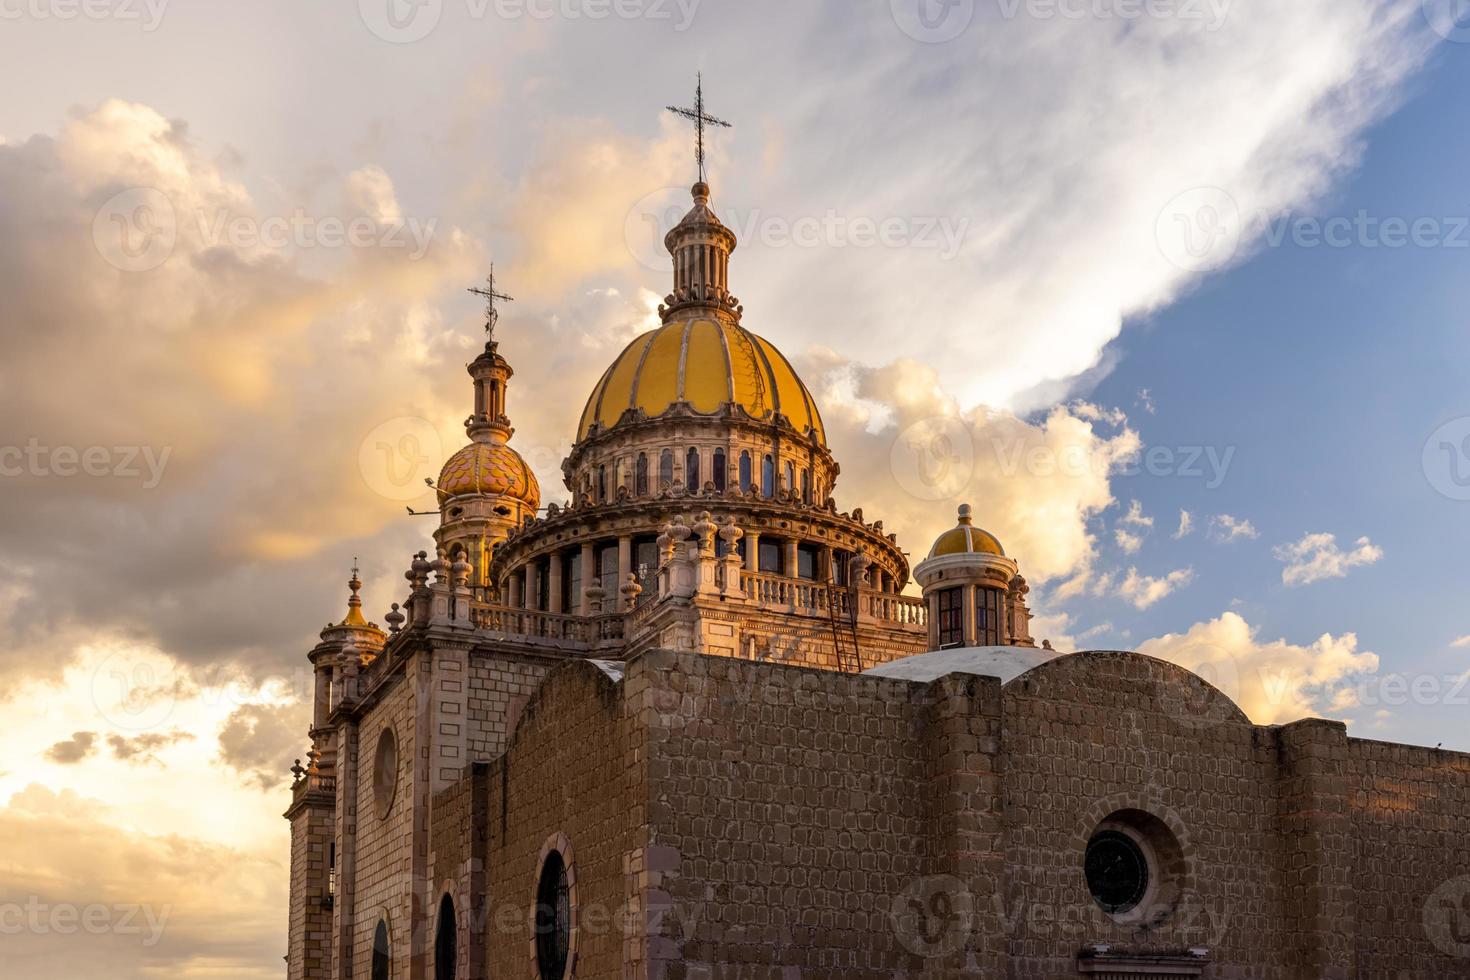 centraal mexico, aguascalientes katholieke kerken, kleurrijke straten en koloniale huizen in het historische stadscentrum in de buurt van de kathedraalbasiliek, een van de belangrijkste toeristische attracties van de stad foto